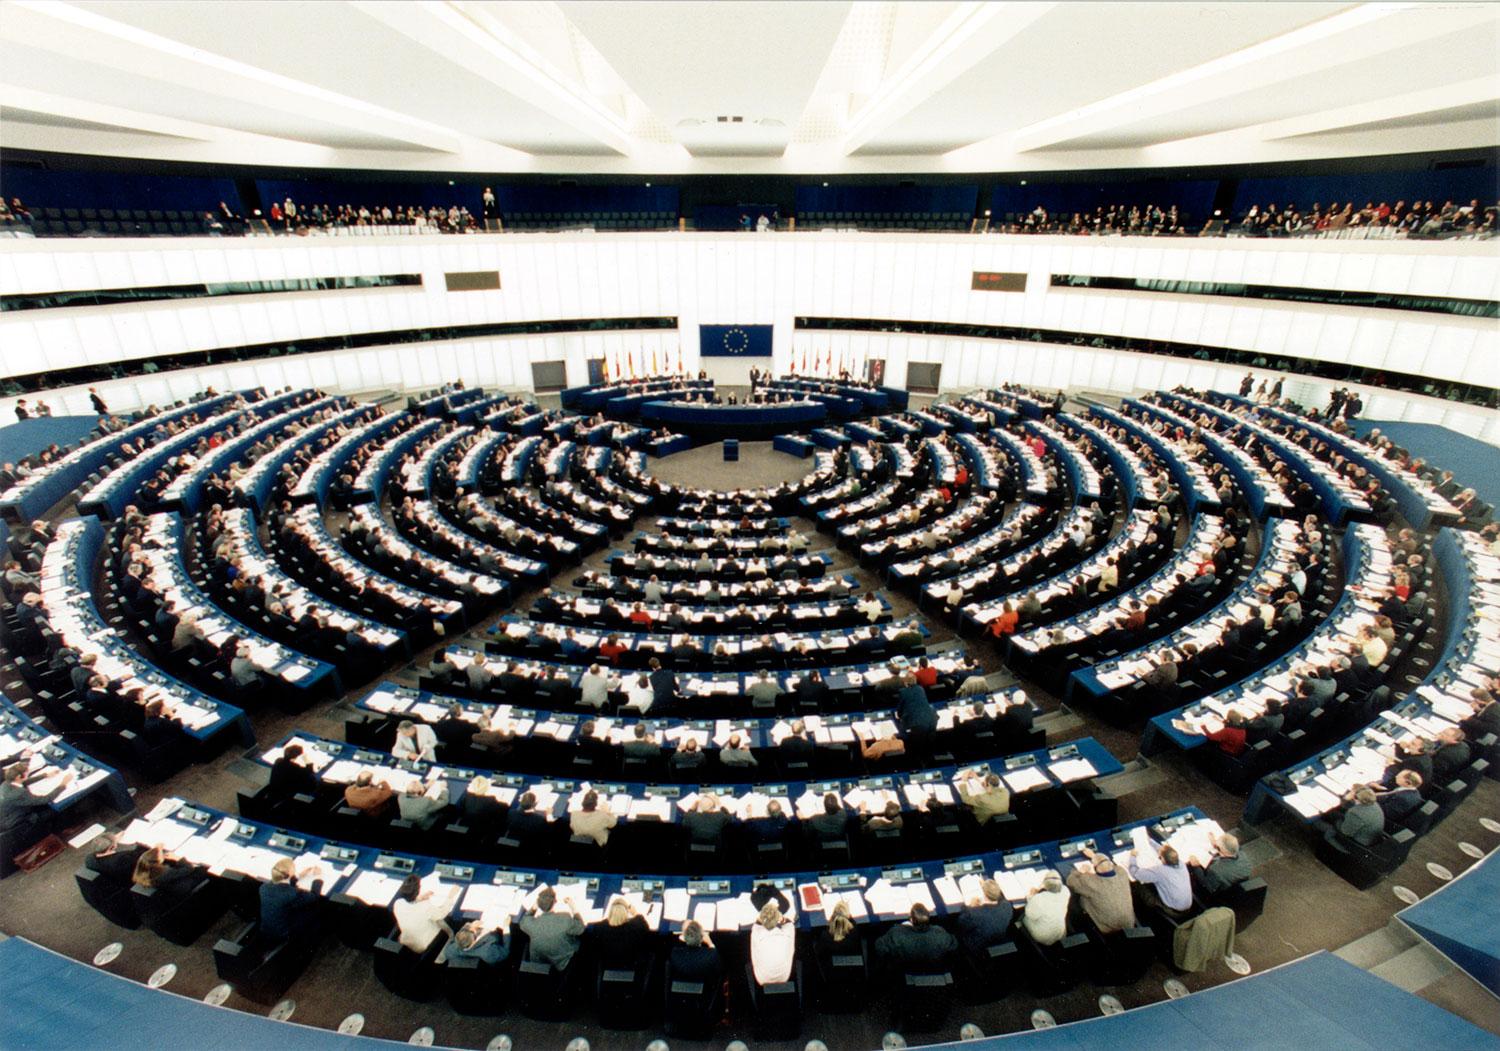 Plenisalen i Europaparlamentet.